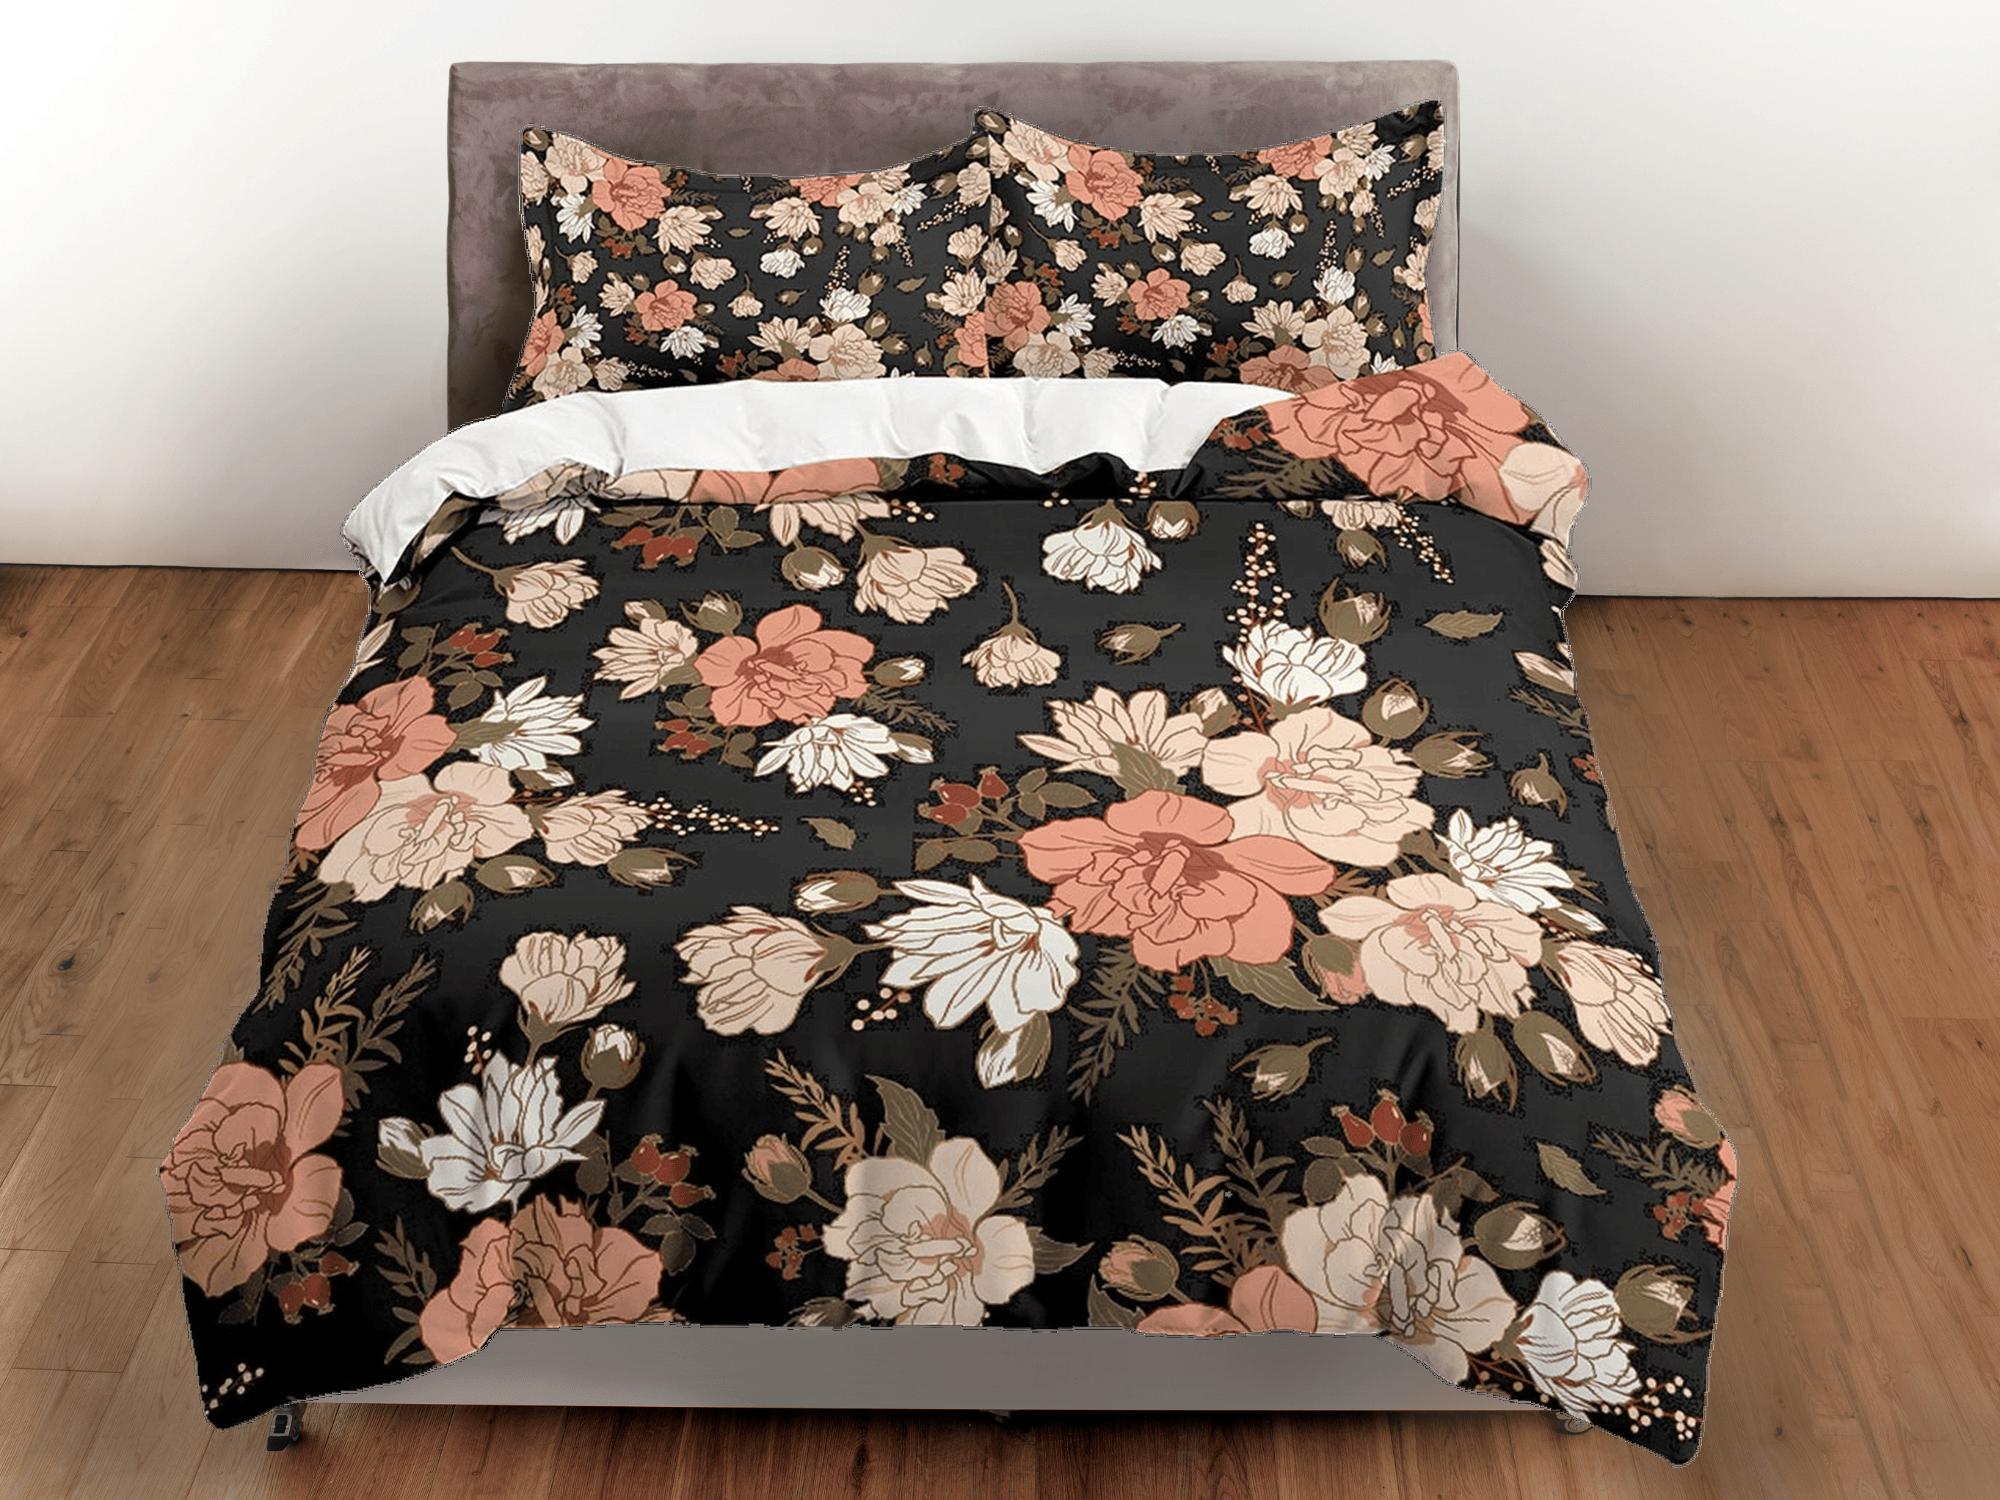 daintyduvet Mid century modern black floral duvet cover queen, king, boho duvet, designer bedding, aesthetic bedding, maximalist full size bedding